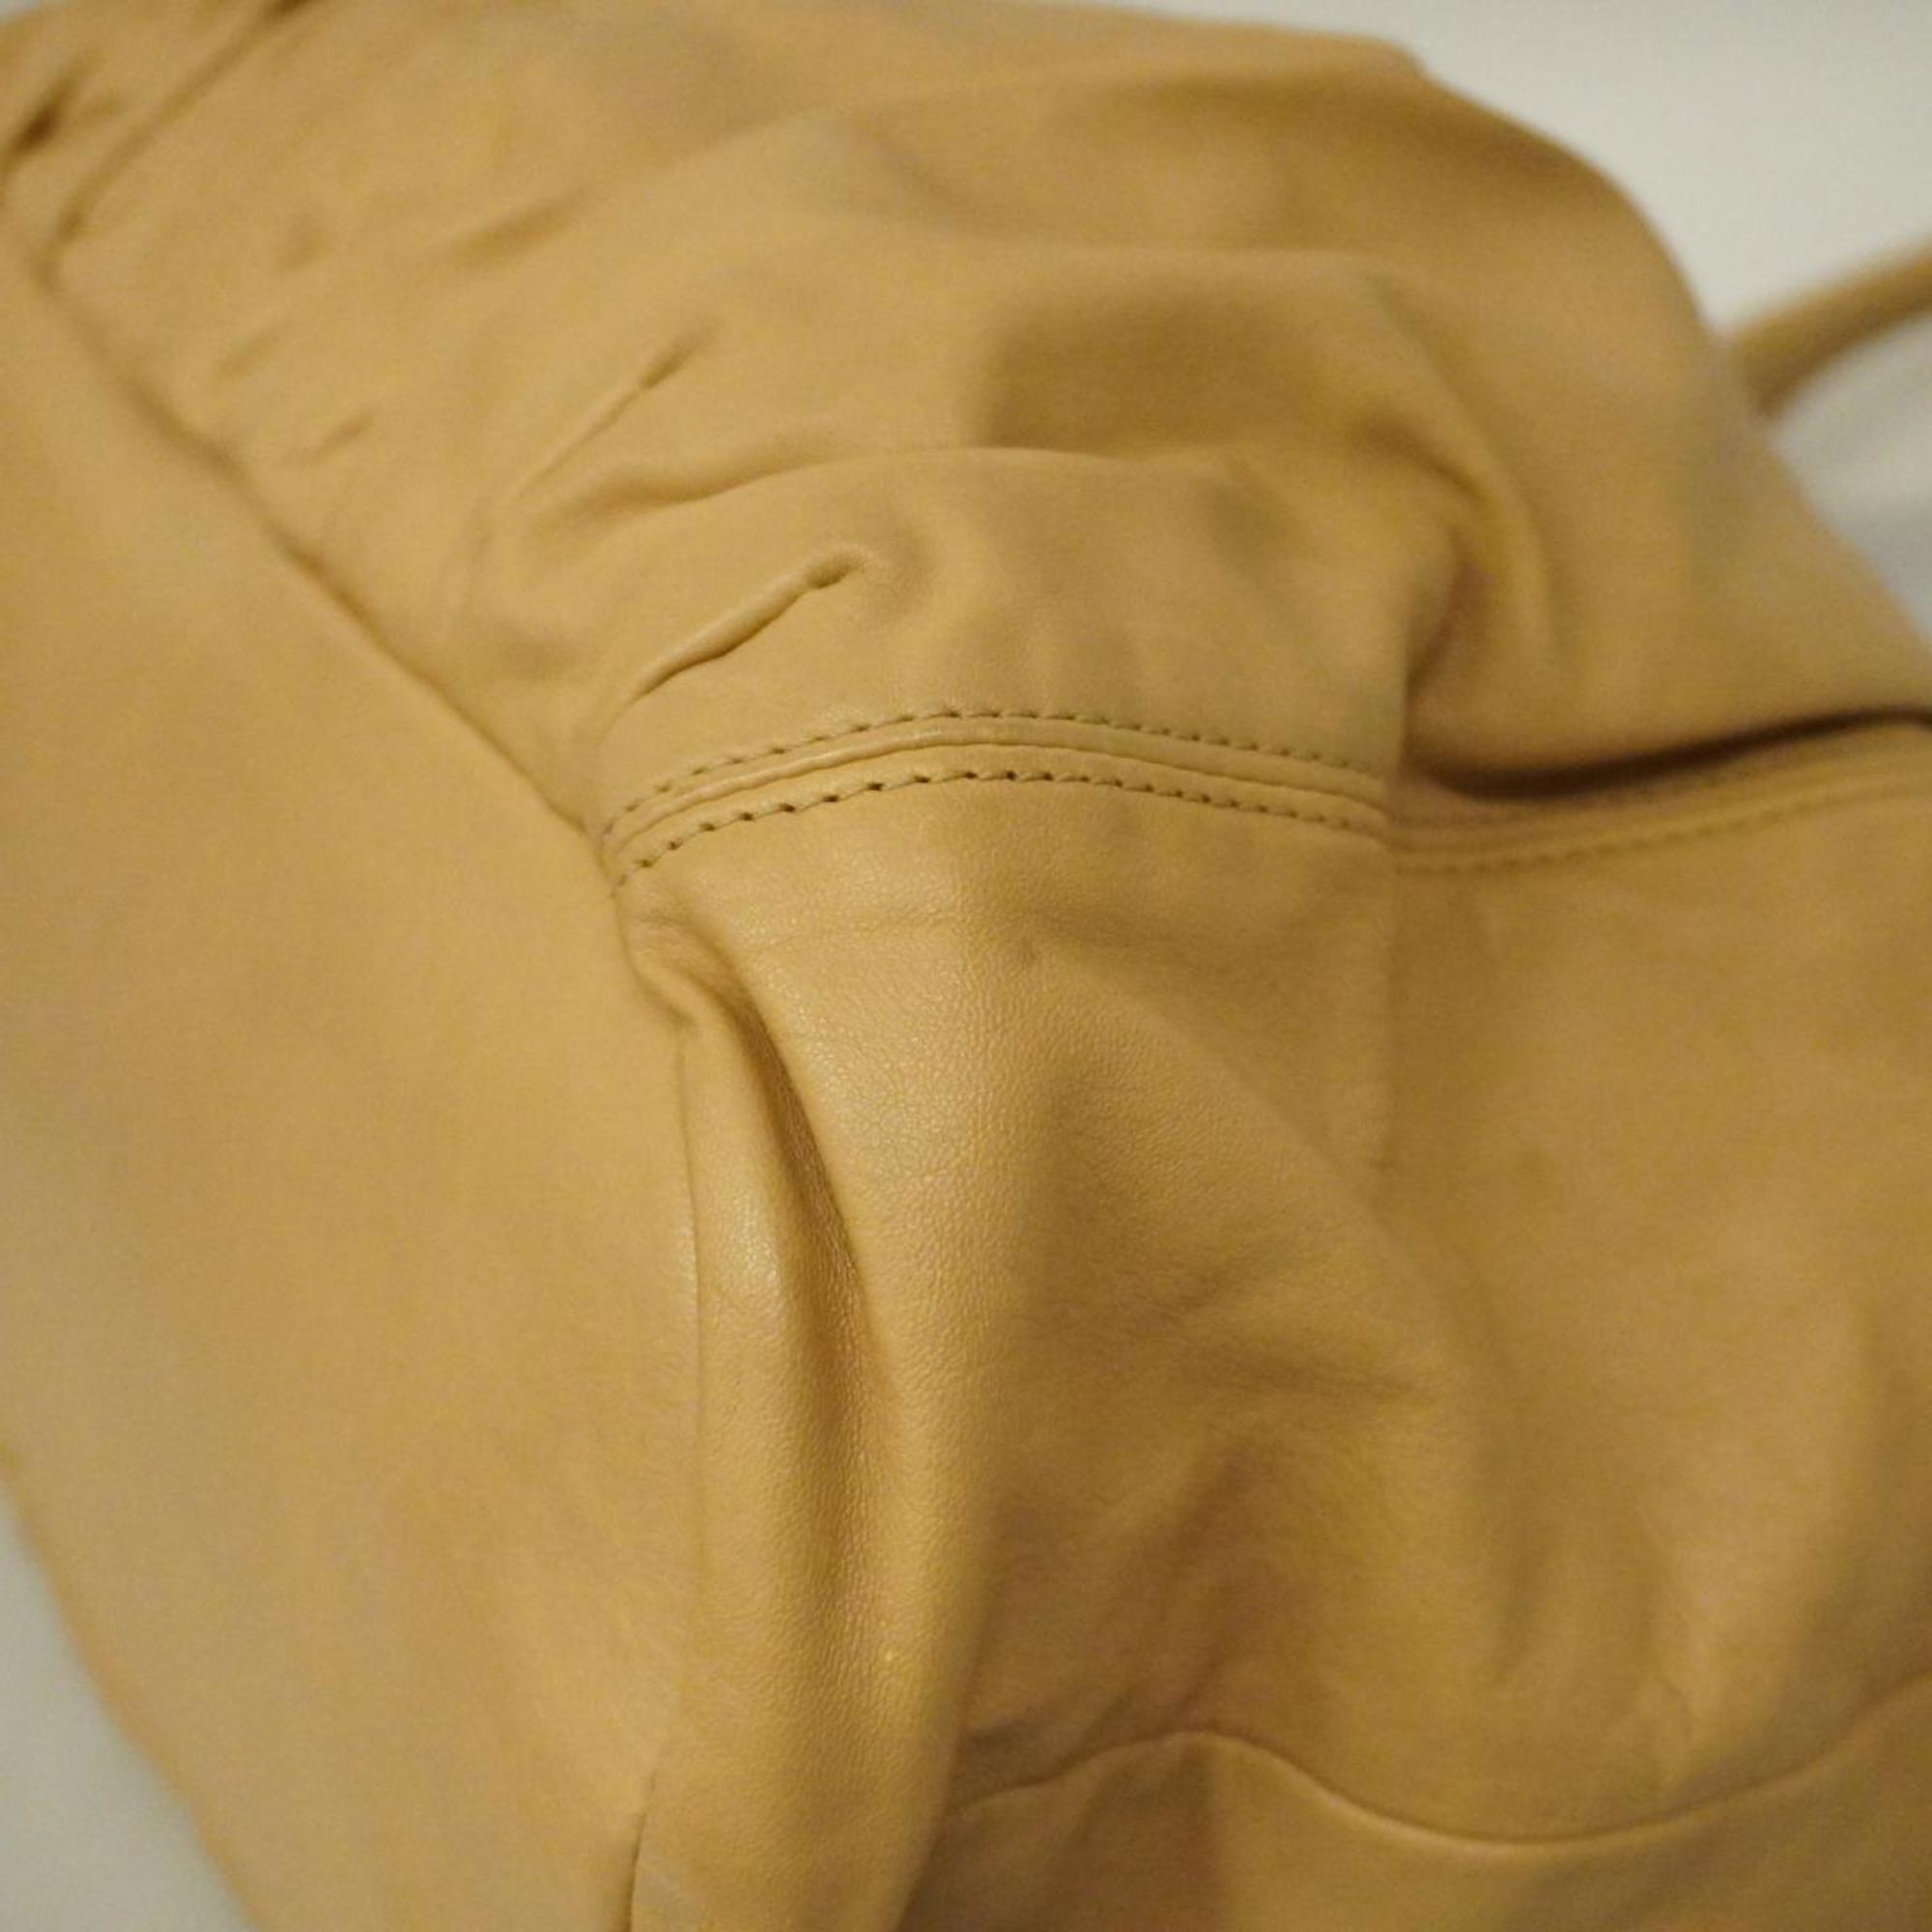 Celine Tote Bag Leather Beige Women's